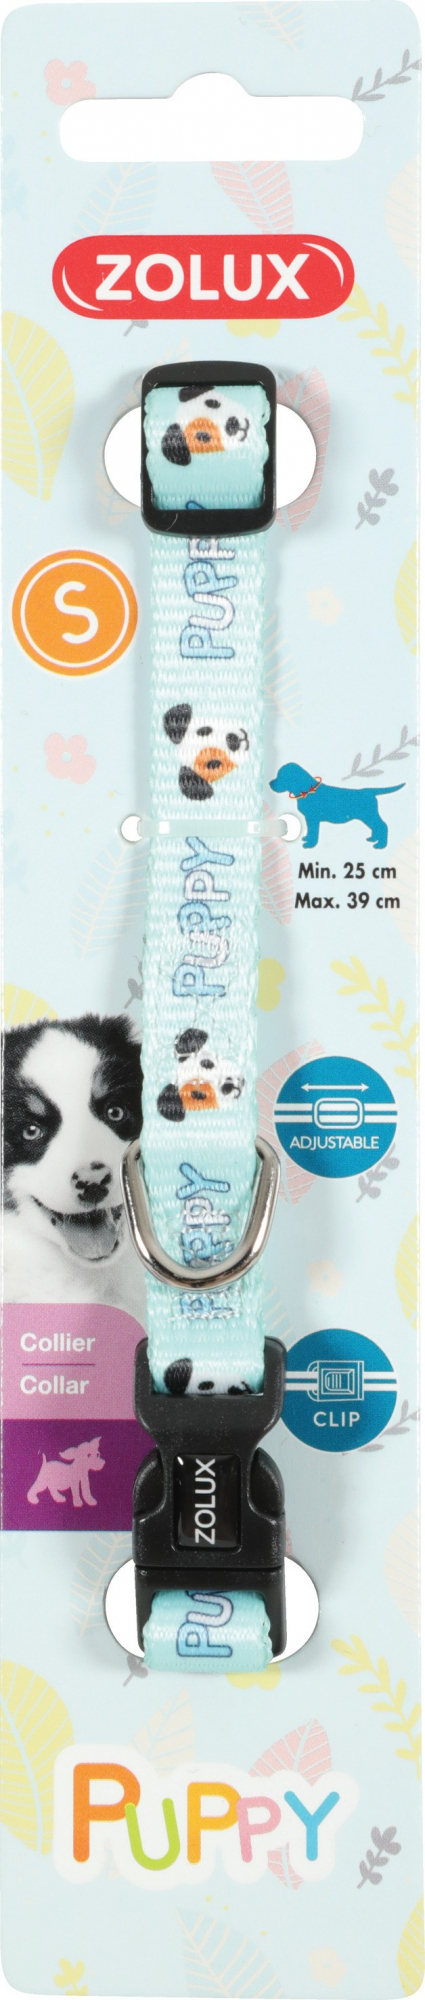 Collar de nylon ajustable para cachorros Puppy Mascotte - azul